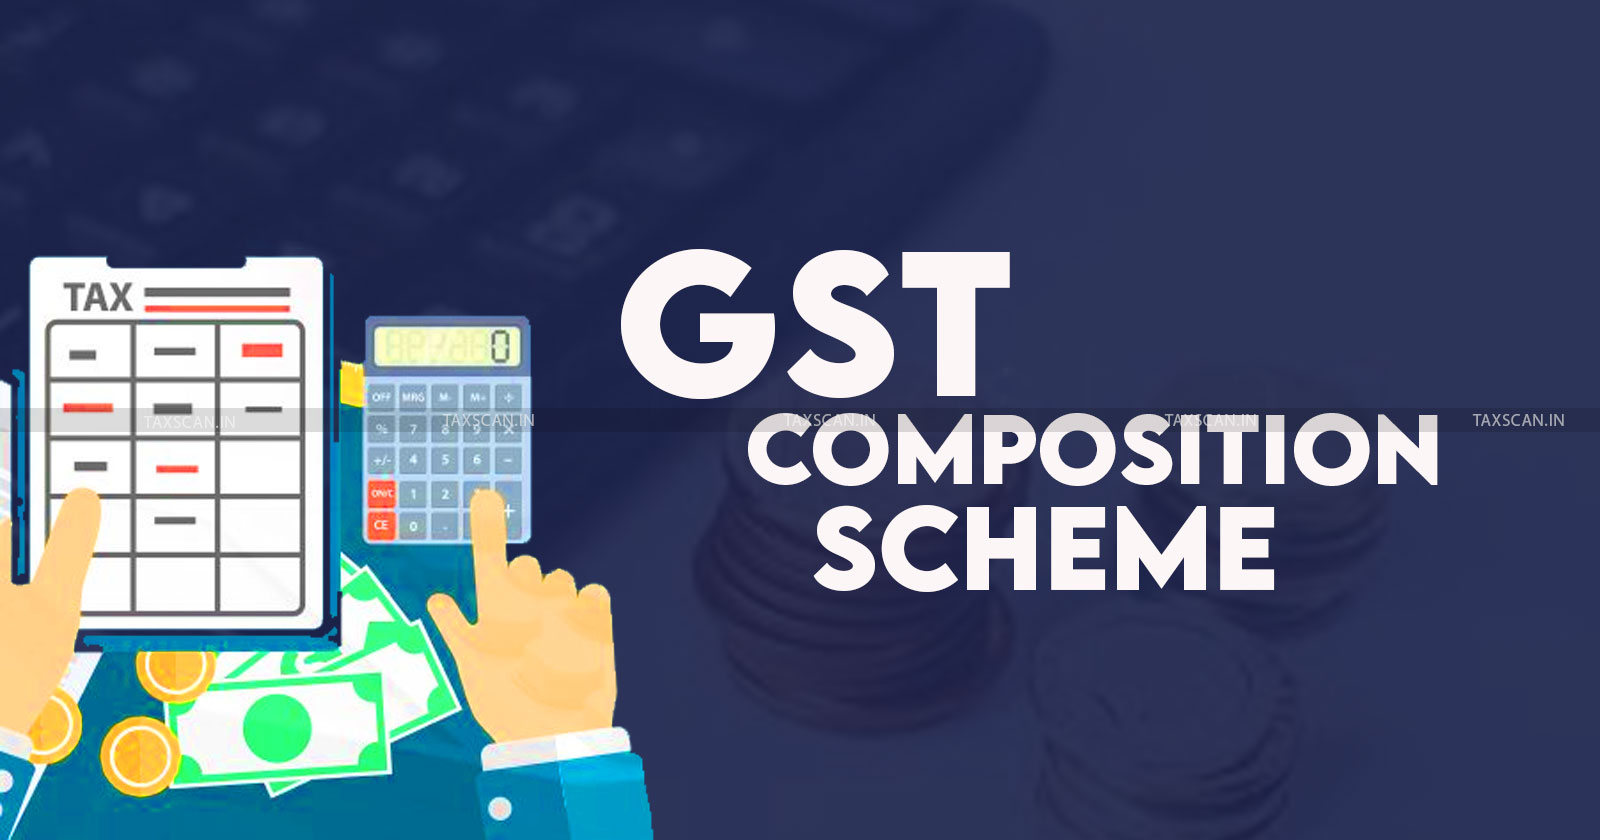 GST - GST Composition Levy - GST Composition Levy guidelines - GST Composition deadline details - GST Composition Scheme eligibility - Taxscan